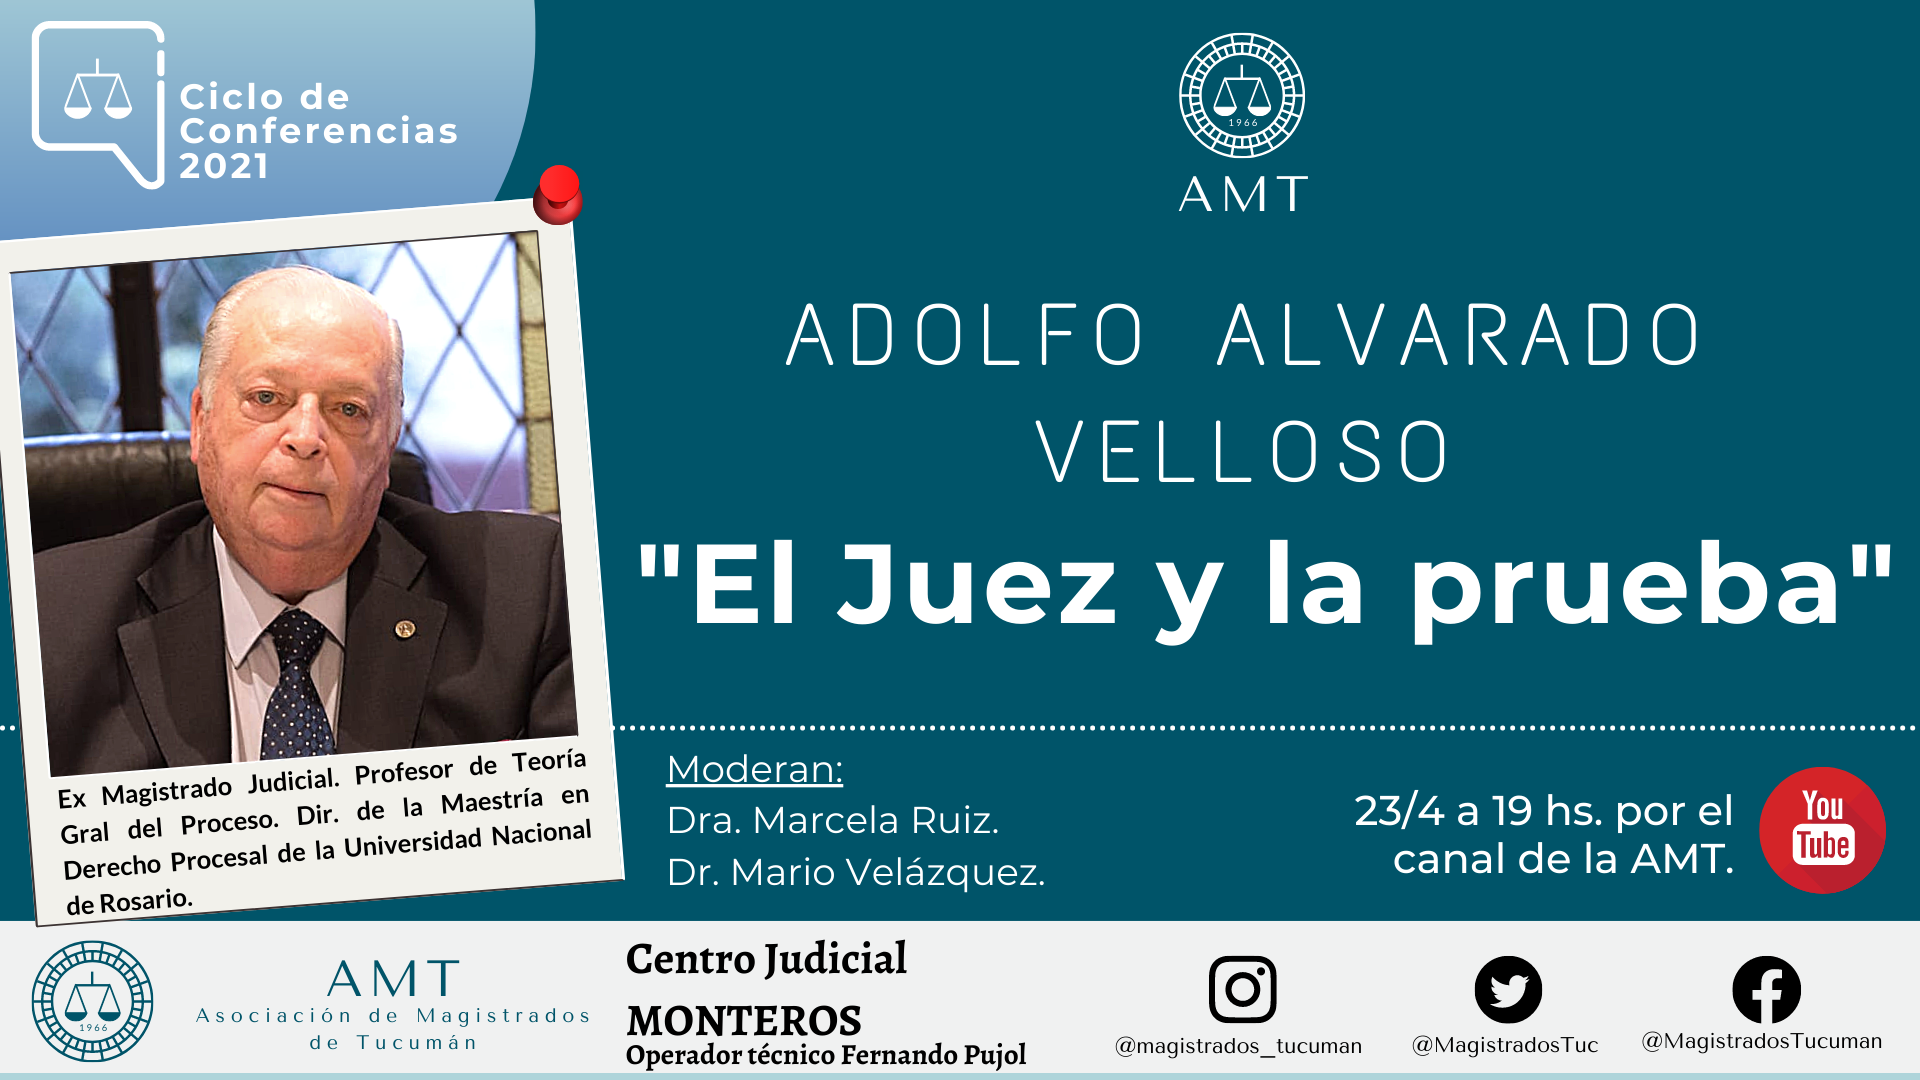 Vuelva a ver la conferencia de Adolfo Alvarado Velloso «El juez y la prueba»